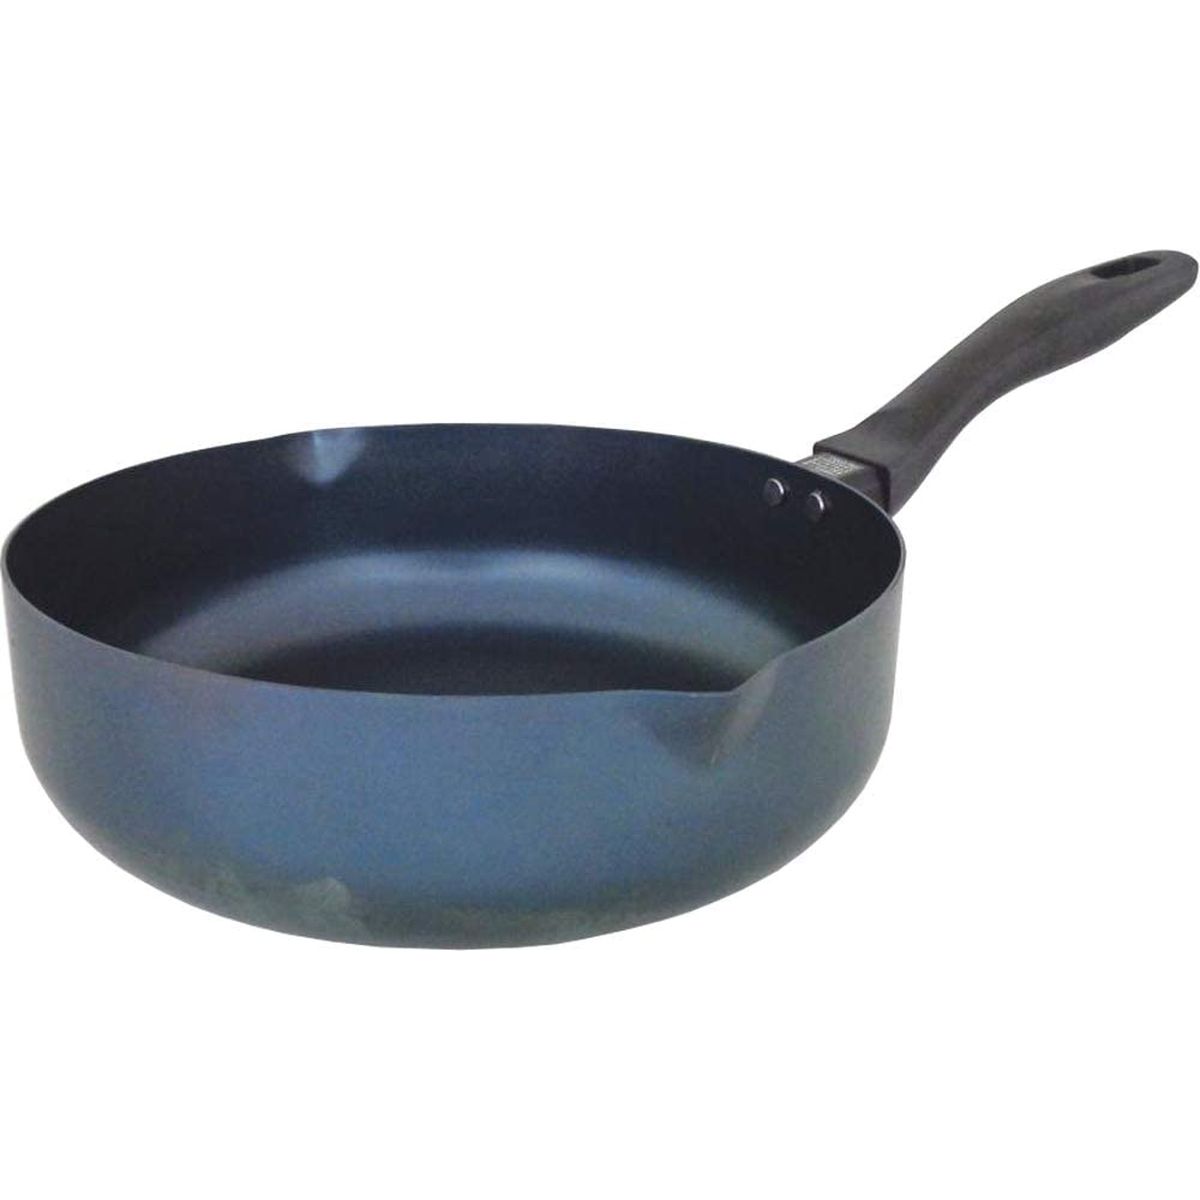 鉄フライパン片手鍋使いやすいパラパラ炒飯パン25cm